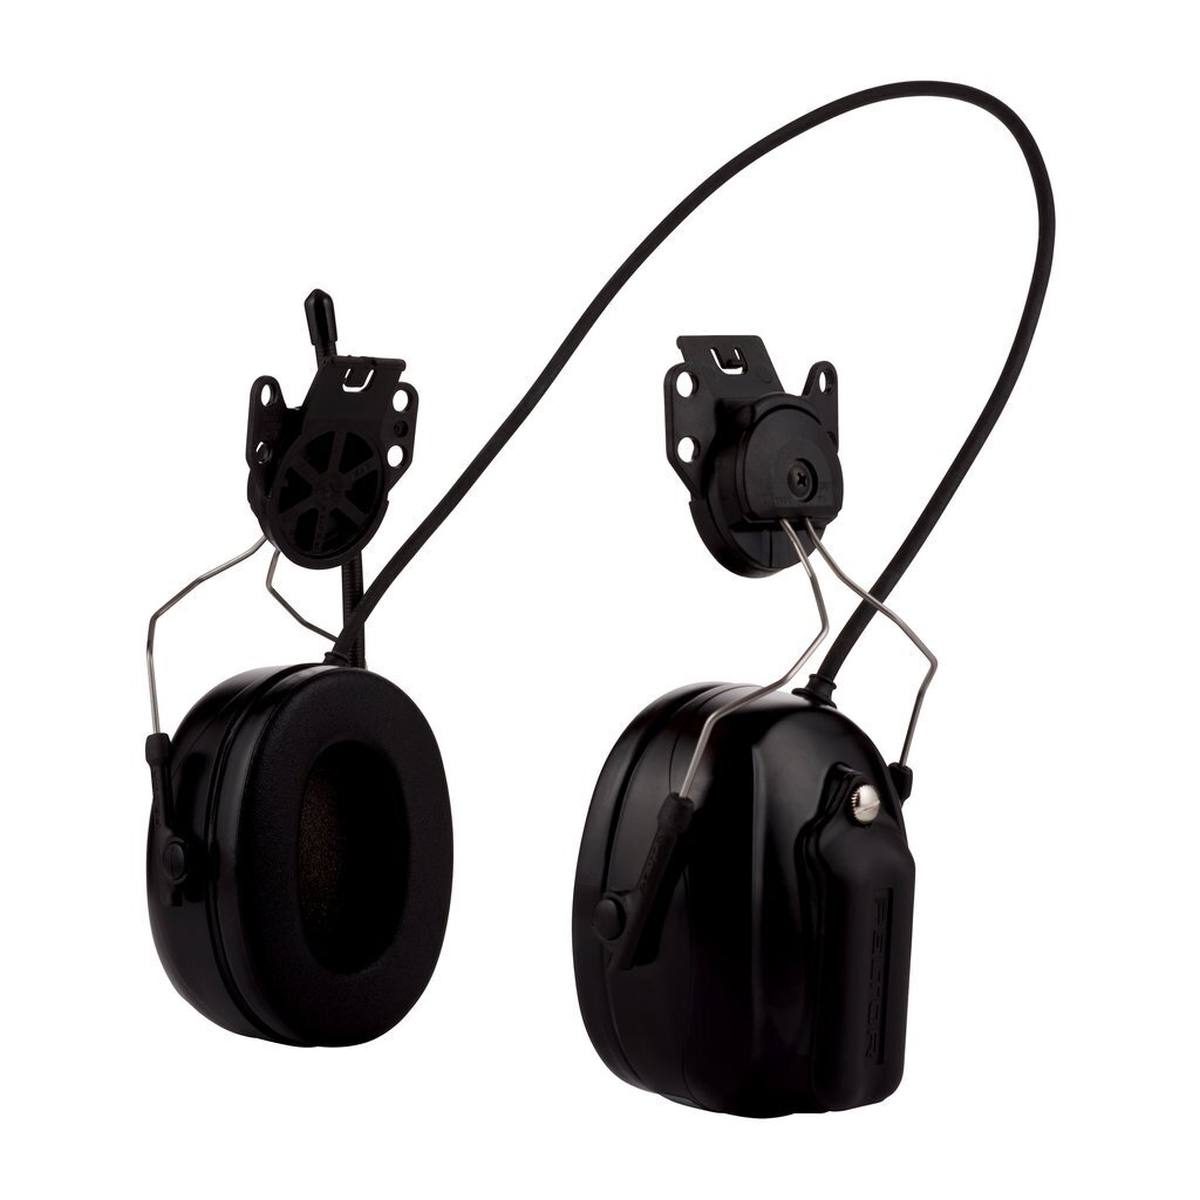 3M Peltor Radio DAB FM, negra, versión para casco, SNR = 30 dB